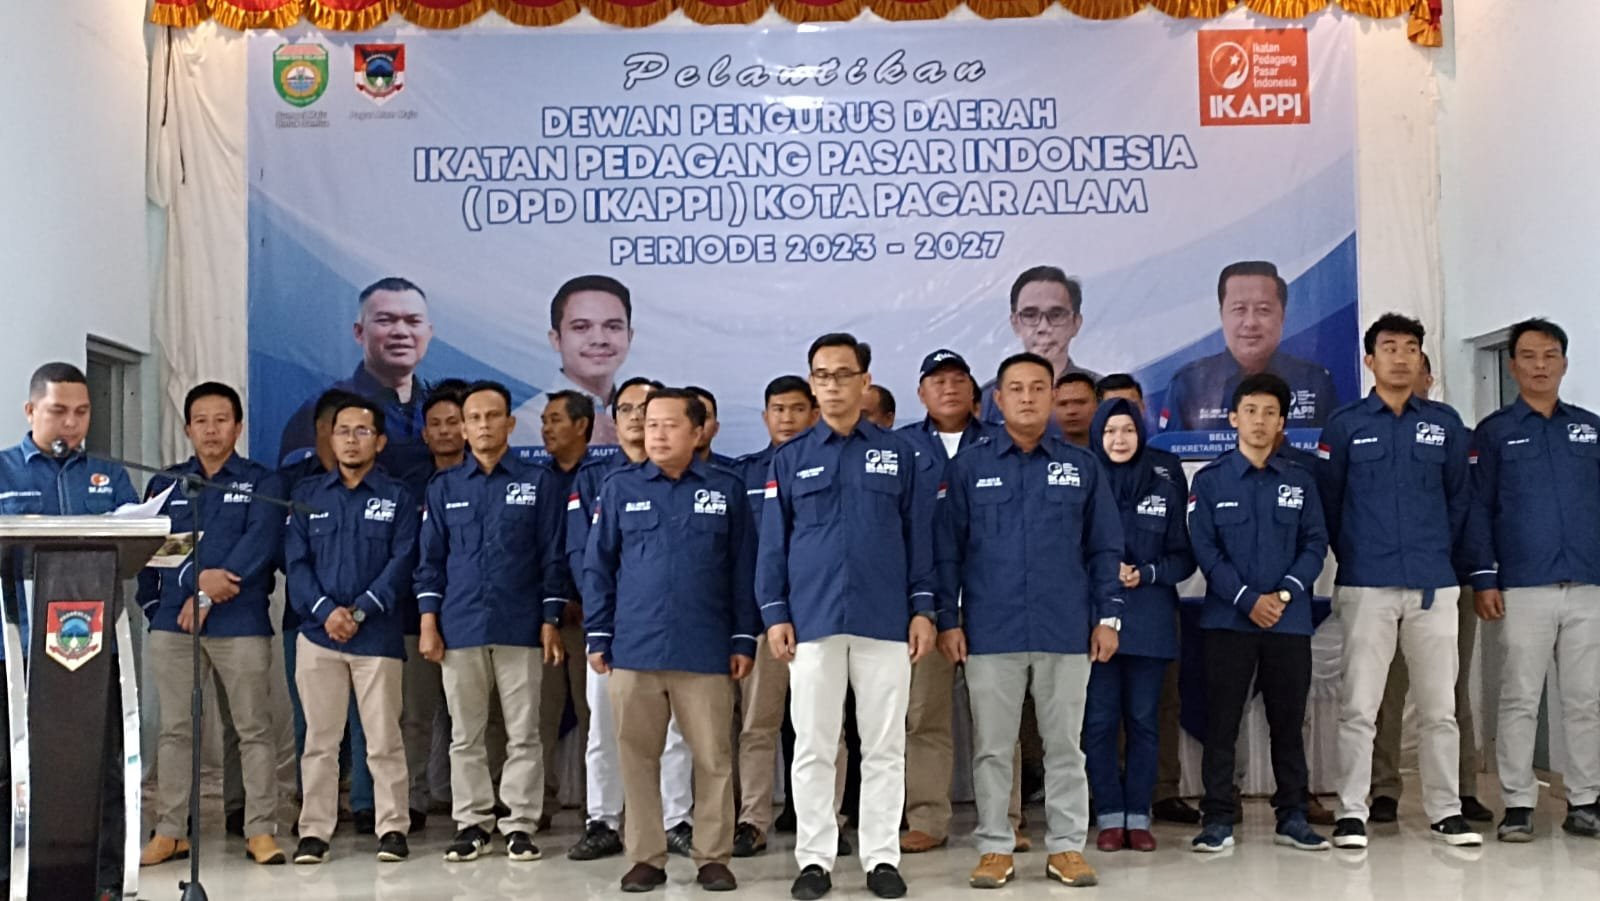 pelantikan Dewan Pengurus Daerah (DPD) Ikatan Pedagang Pasar Indonesia (IKAPPI) Kota Pagar Alam